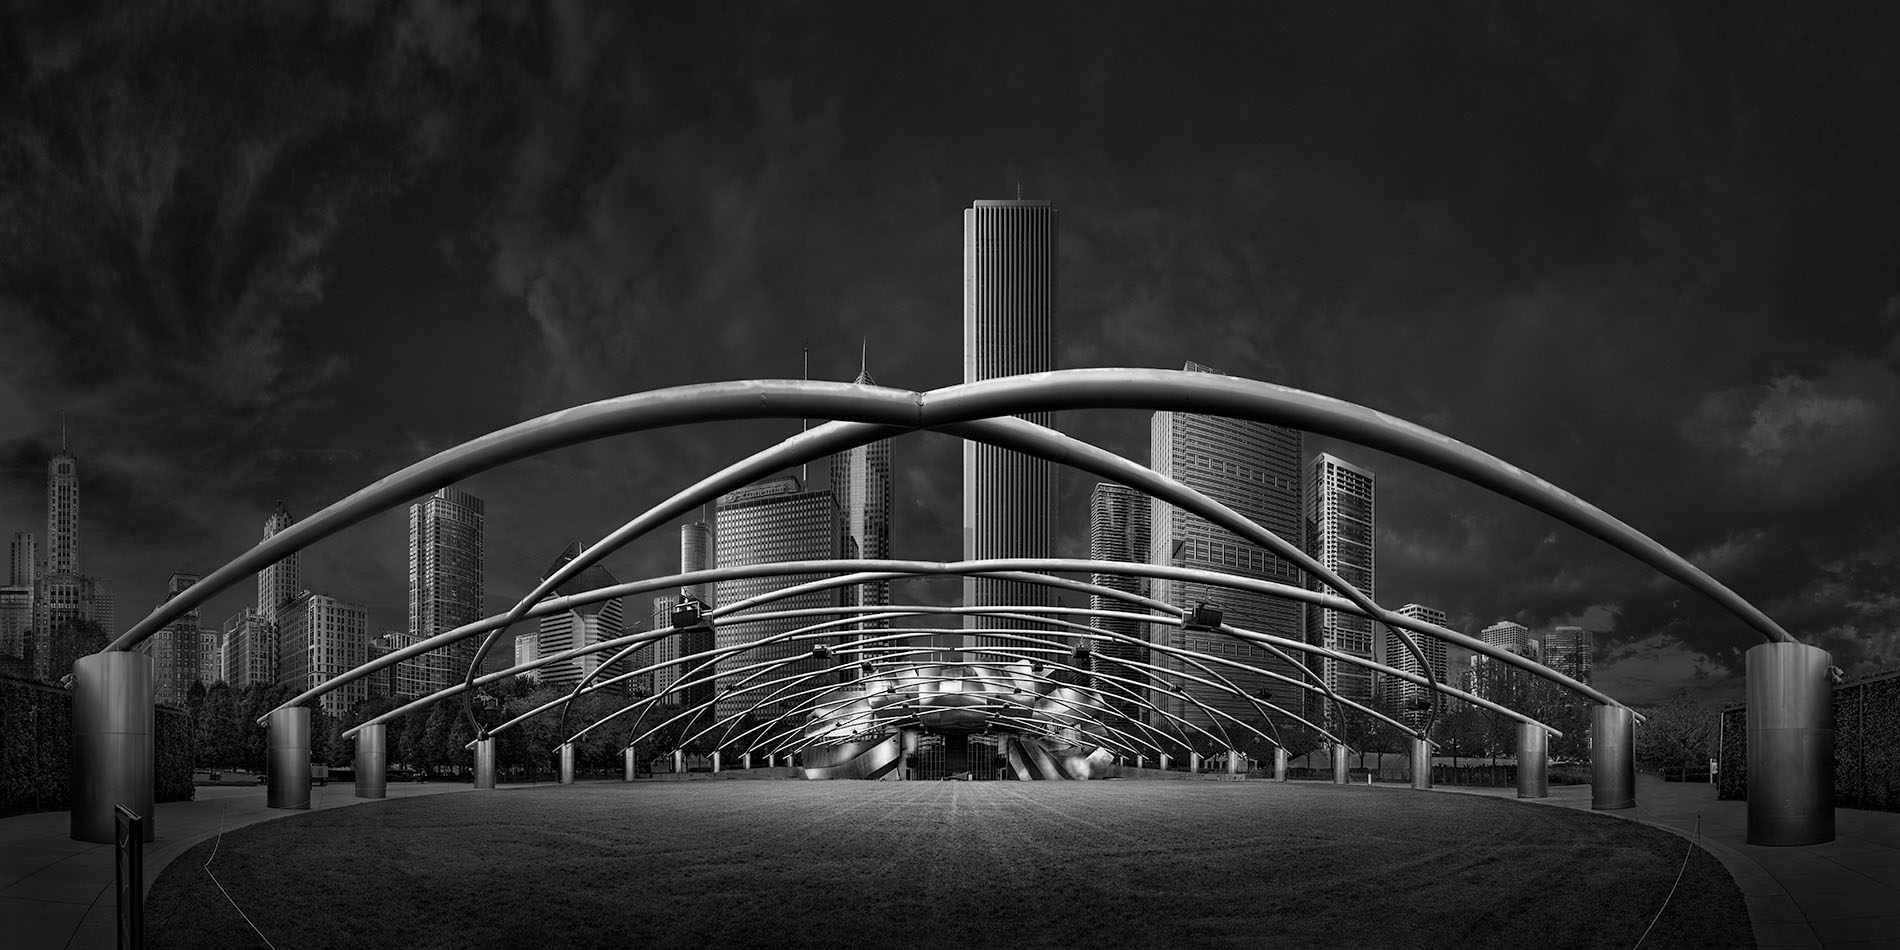 Frank Gehry architect Pritzker pavilion Millennium Park Chicago